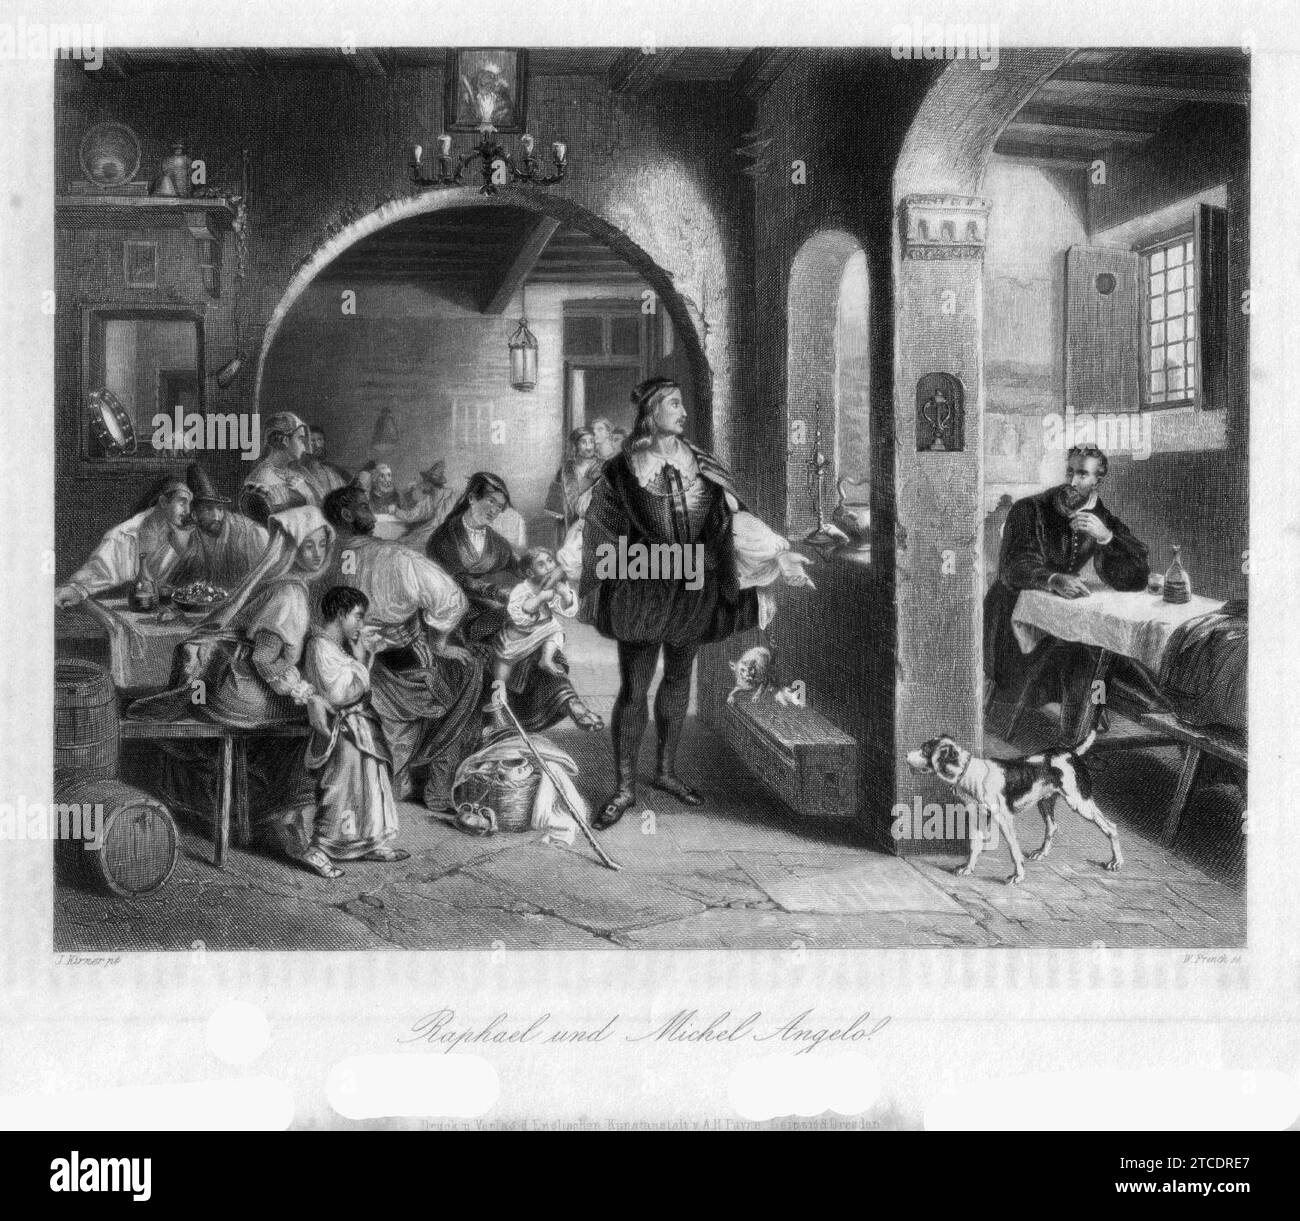 William French (1815-1898), Raphael und Michel Angelo, Stahlstich, nach J. Kirner, D1274. Stock Photo